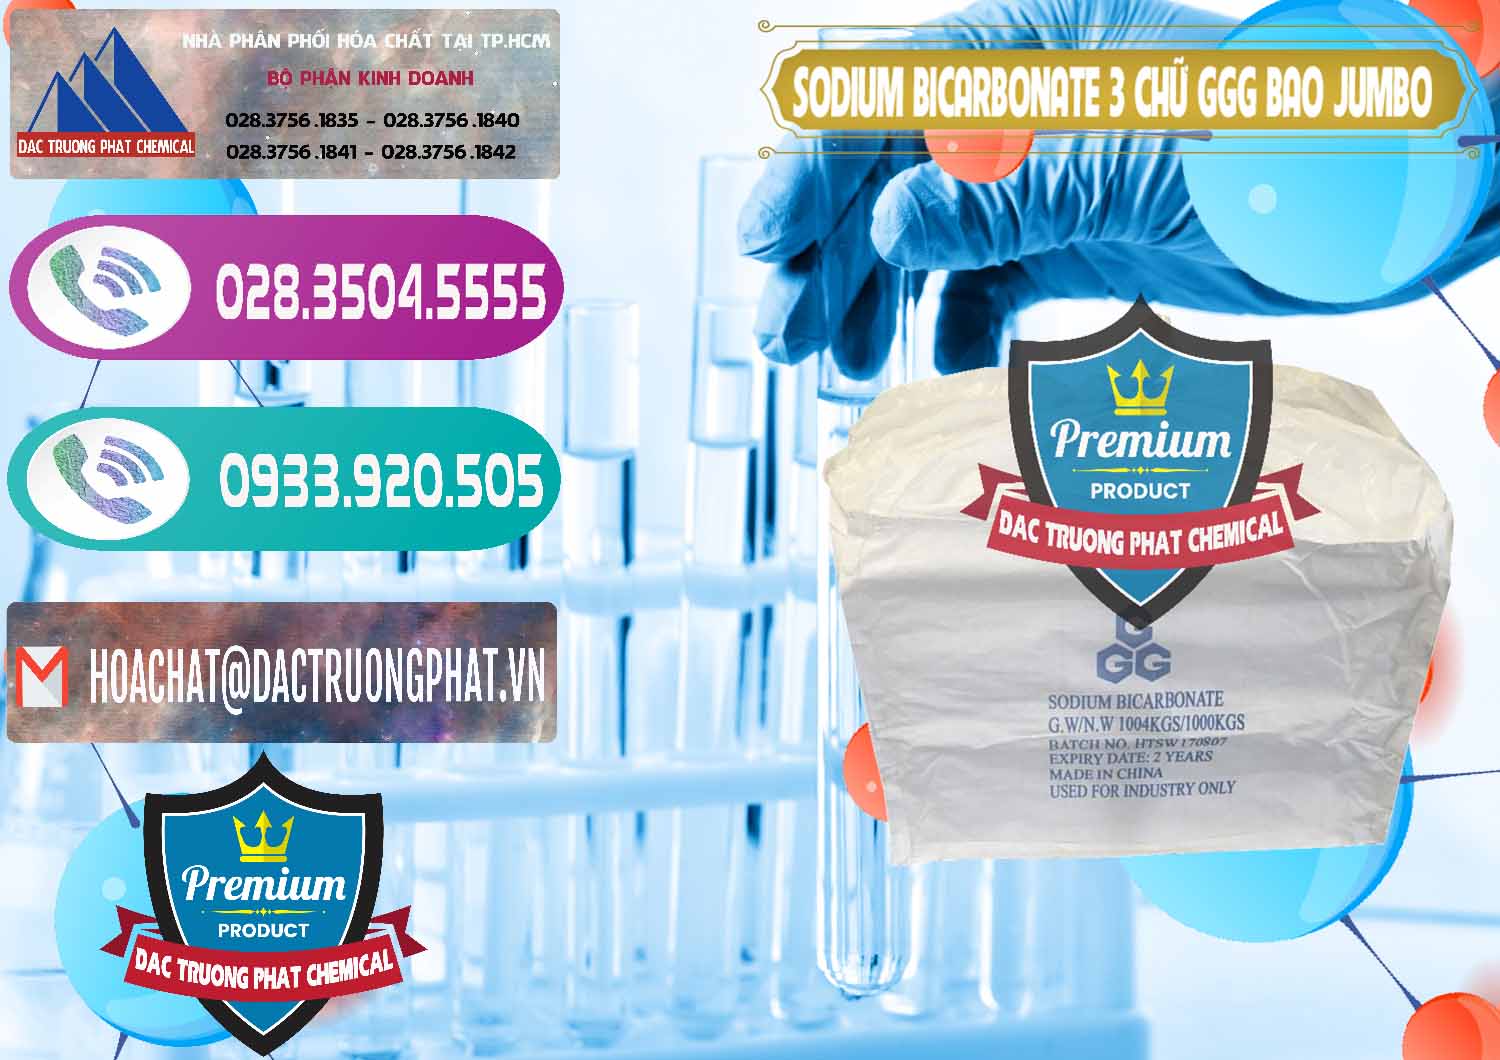 Cty chuyên cung ứng ( bán ) Sodium Bicarbonate – Bicar NaHCO3 Food Grade 3 Chữ GGG Bao Jumbo ( Bành ) Trung Quốc China - 0260 - Công ty phân phối _ nhập khẩu hóa chất tại TP.HCM - hoachatxulynuoc.com